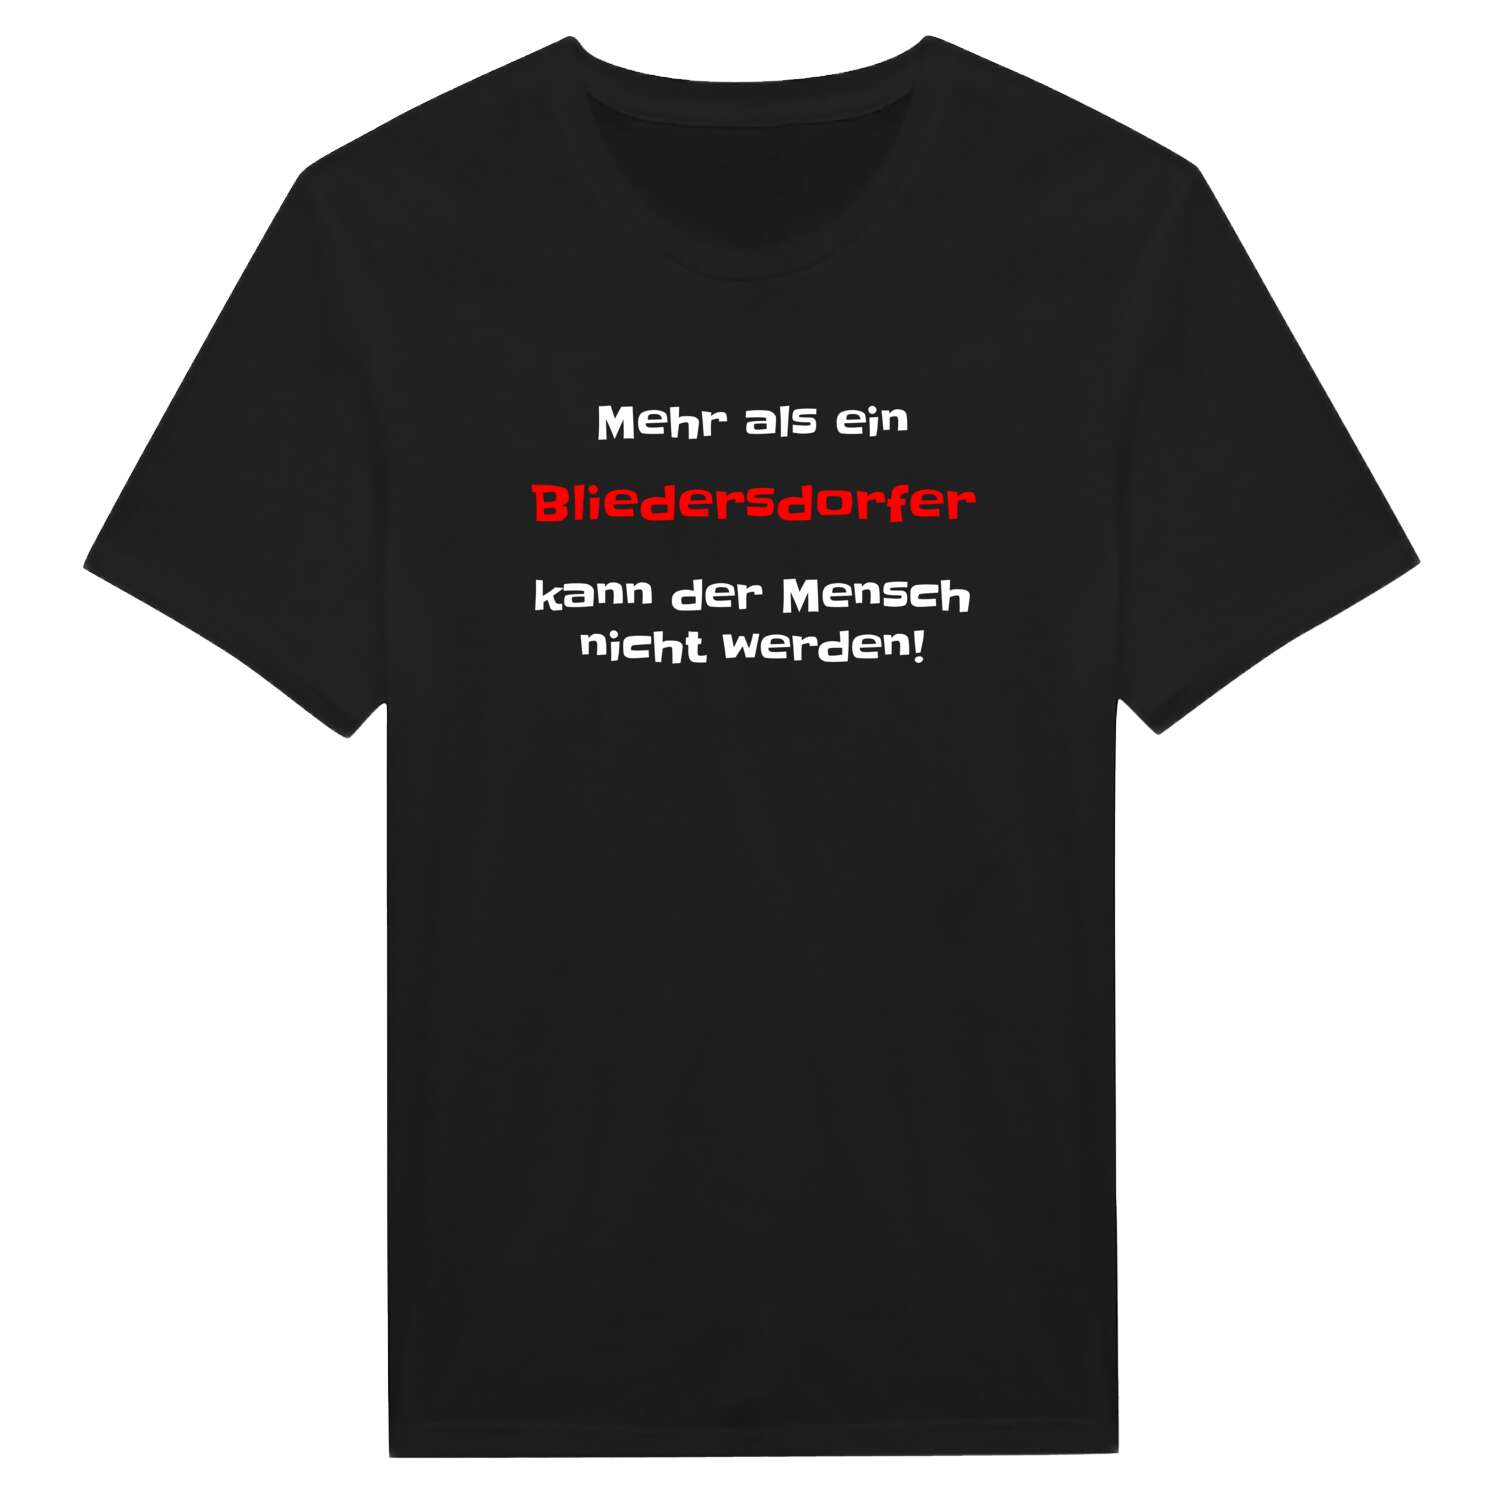 Bliedersdorf T-Shirt »Mehr als ein«